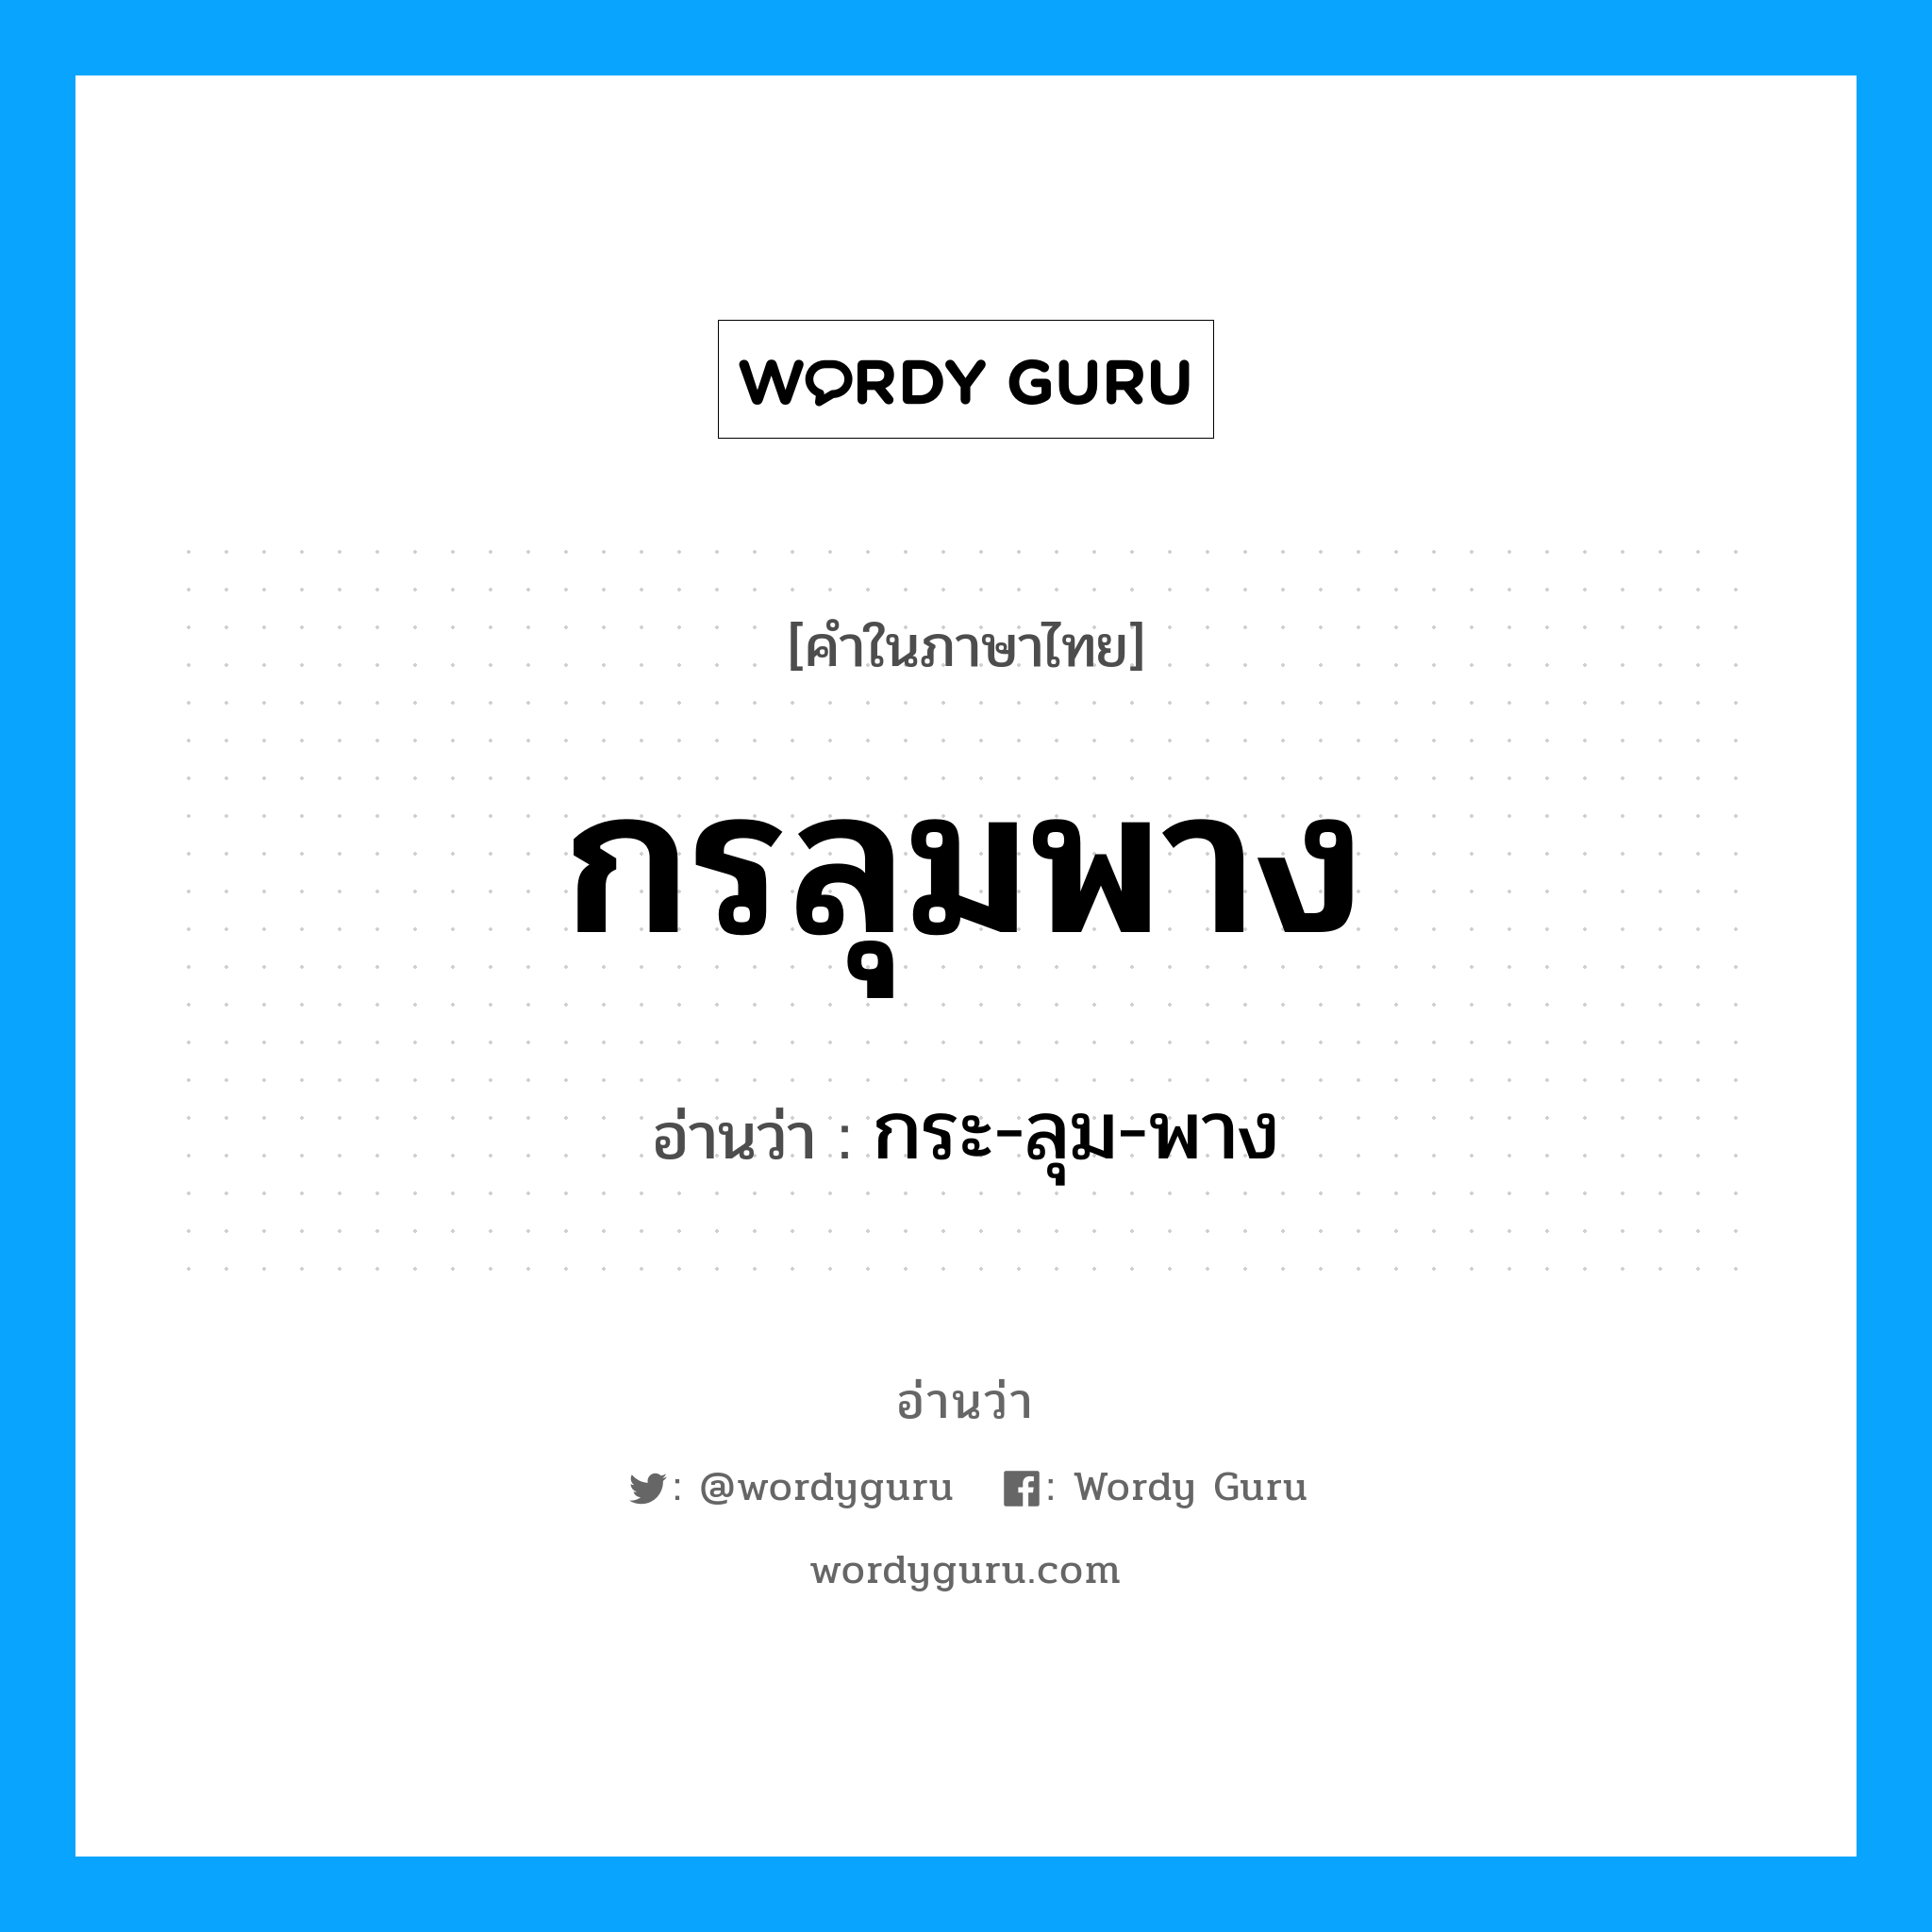 กระ-ลุม-พาง เป็นคำอ่านของคำไหน?, คำในภาษาไทย กระ-ลุม-พาง อ่านว่า กรลุมพาง